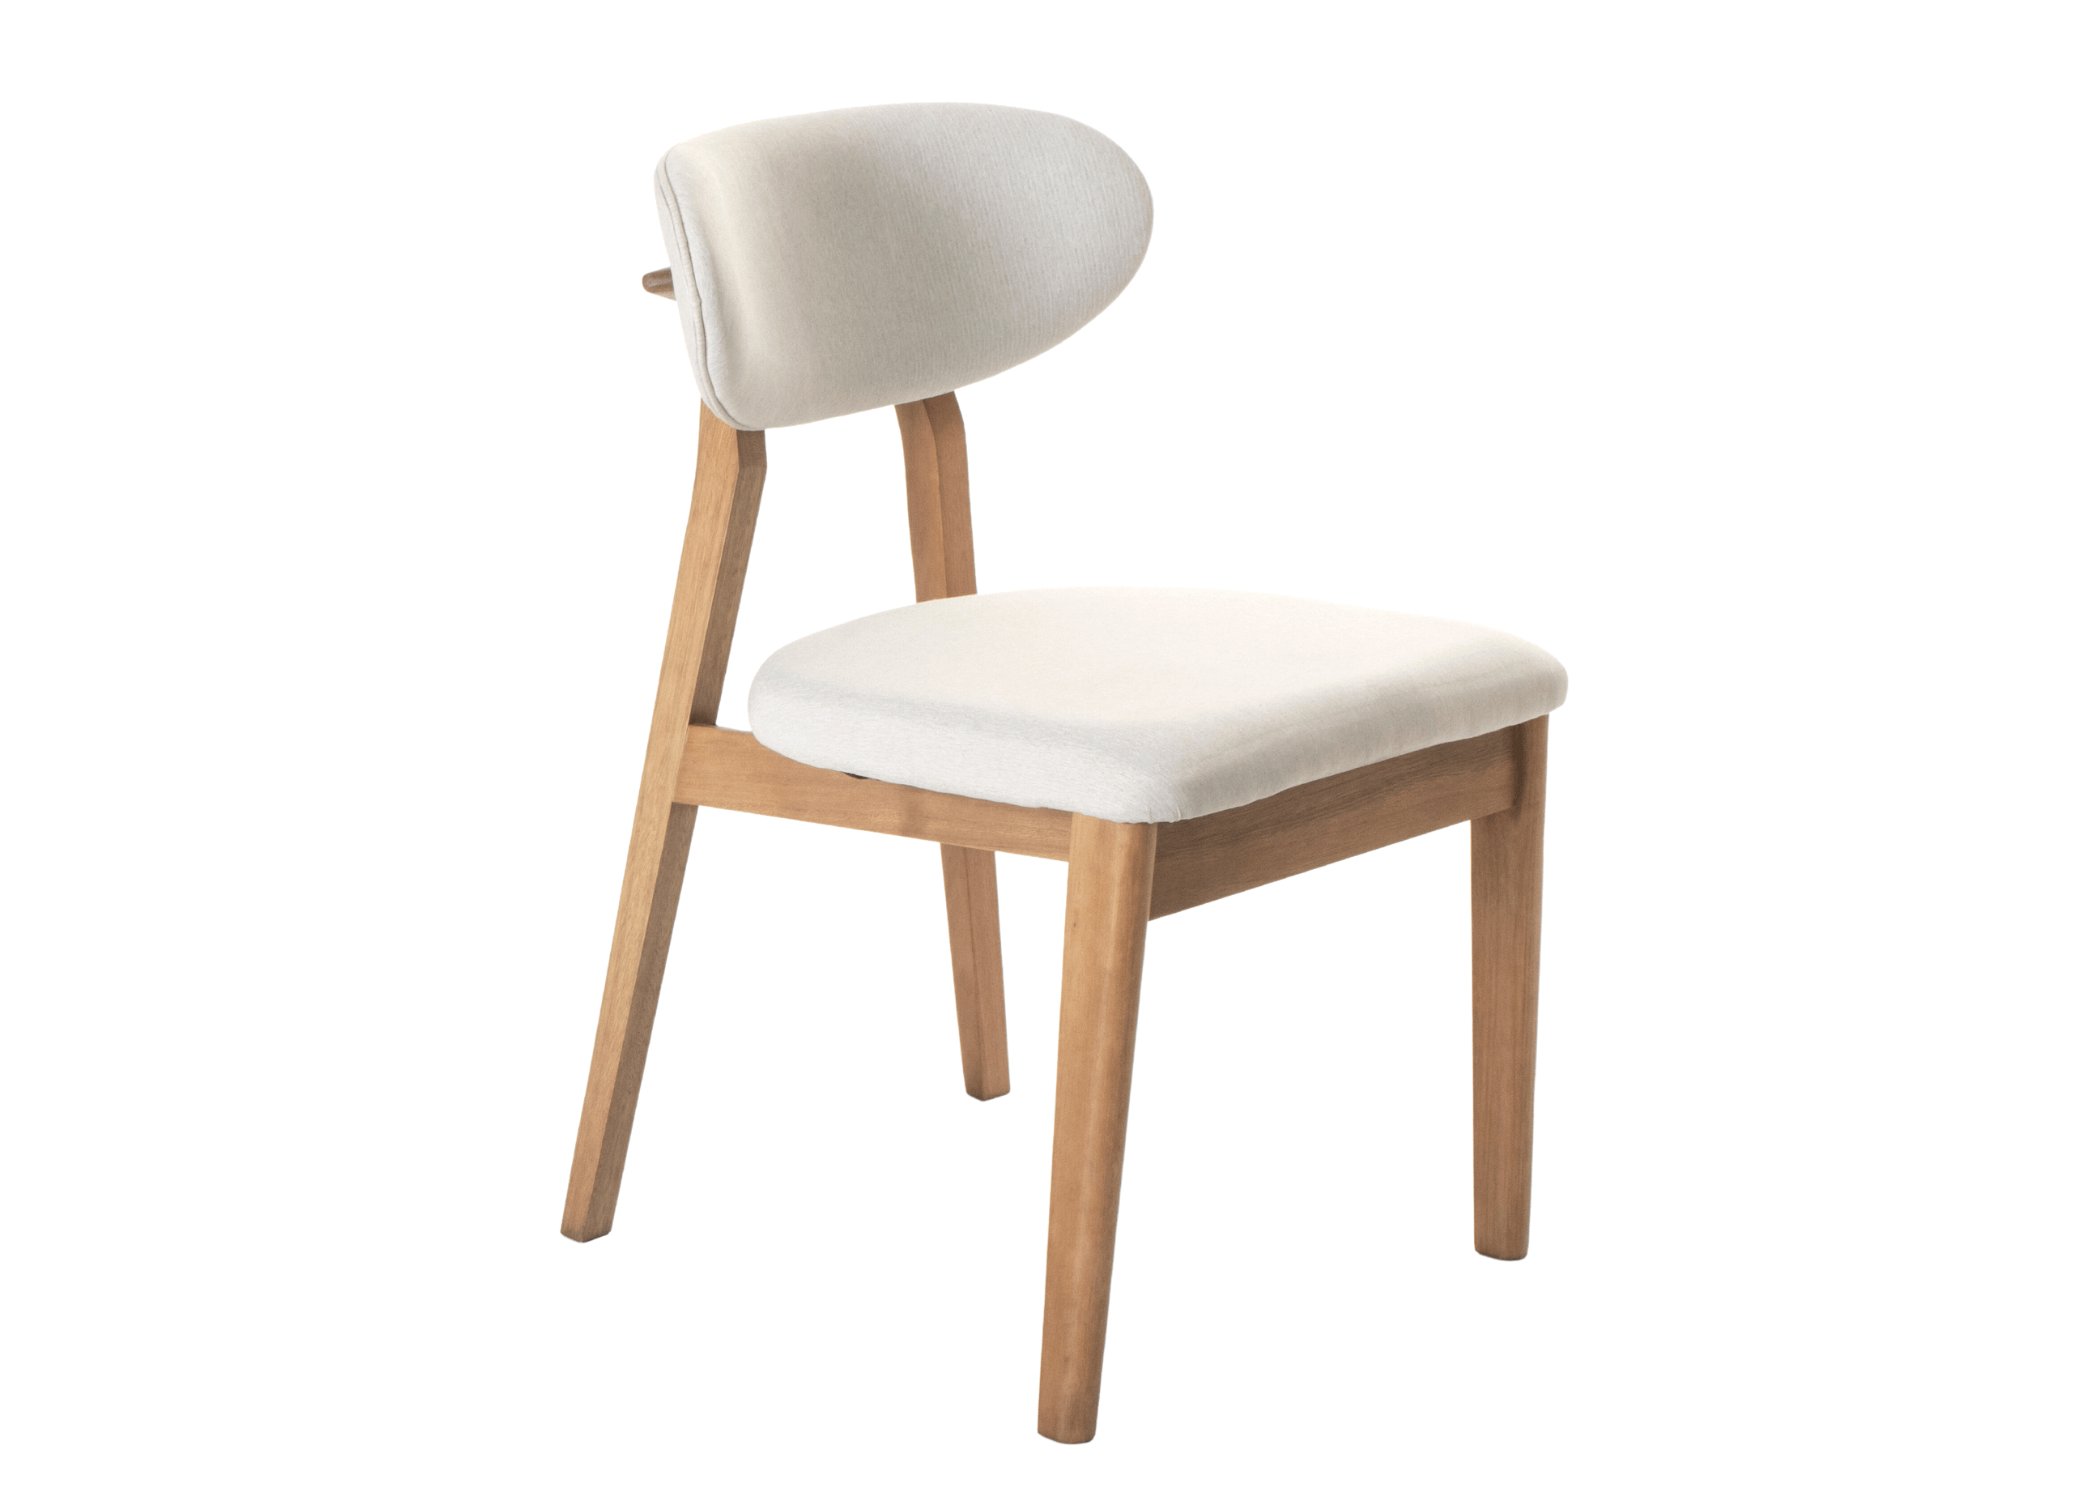 Cadeira Dunas: design contemporâneo e conforto ergonômico em uma única peça.